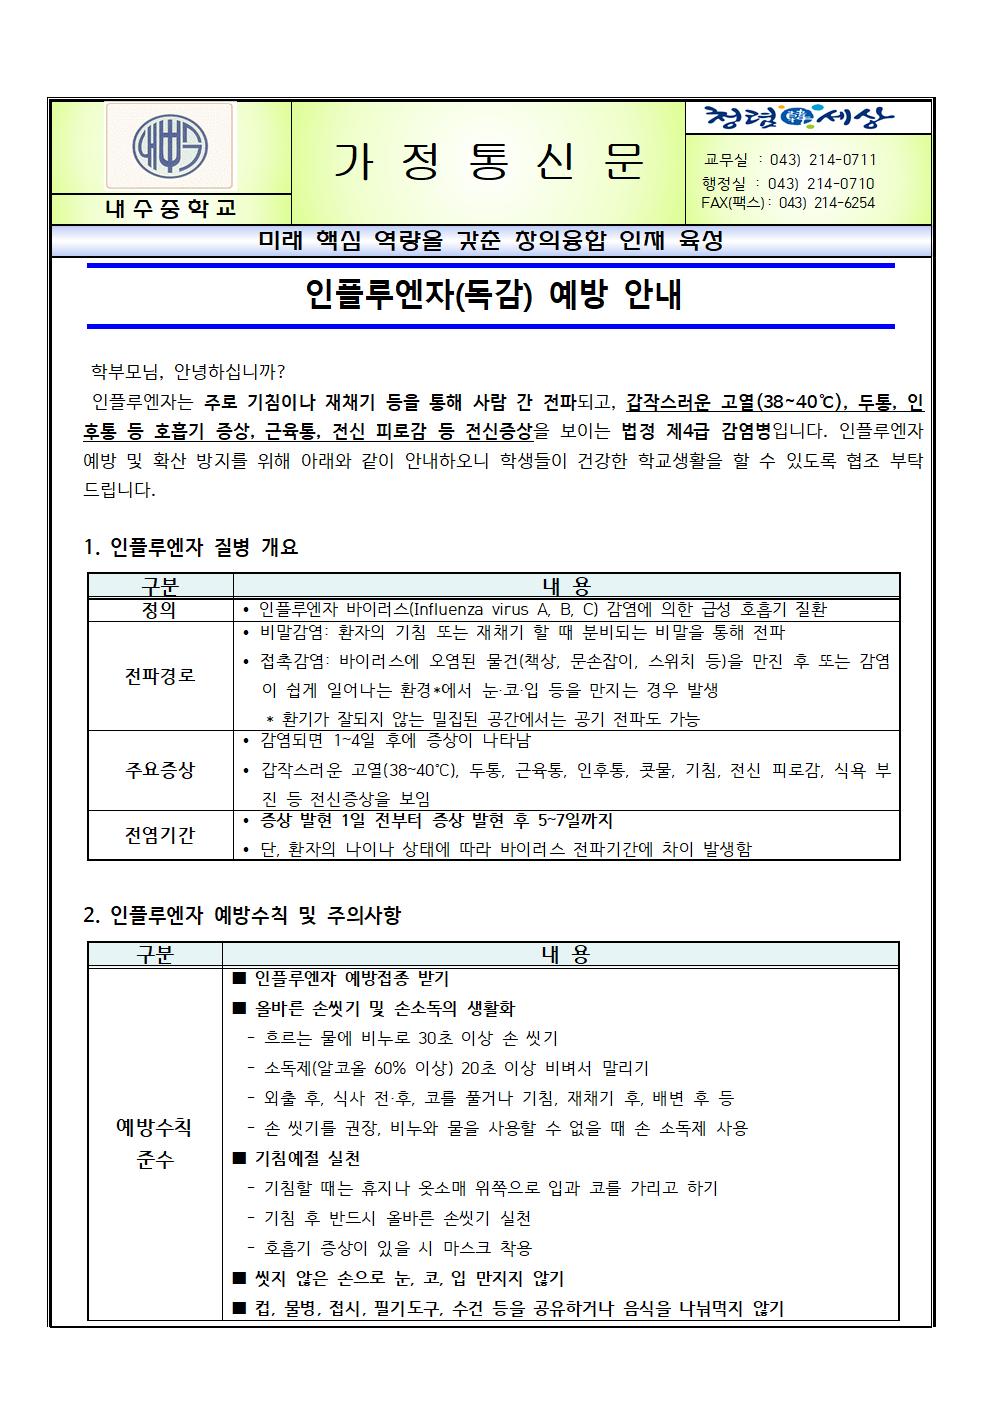 인플루엔자(독감) 예방 안내 가정통신문001